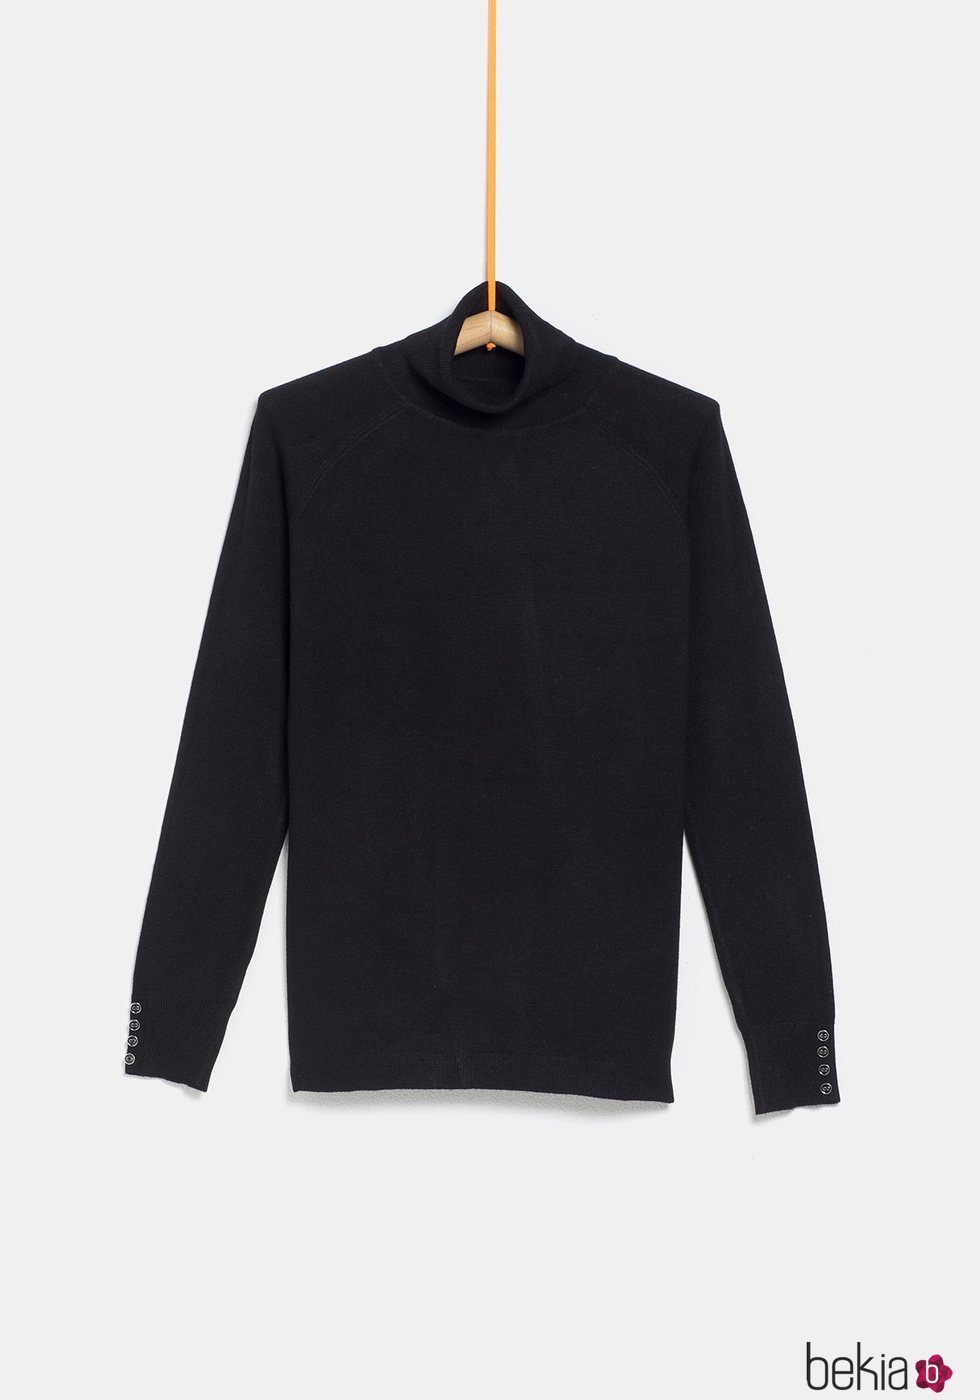 Jersey cuello alto negro de la colección 'I-O' de Carrefour y TEX para otoño/invierno 2019